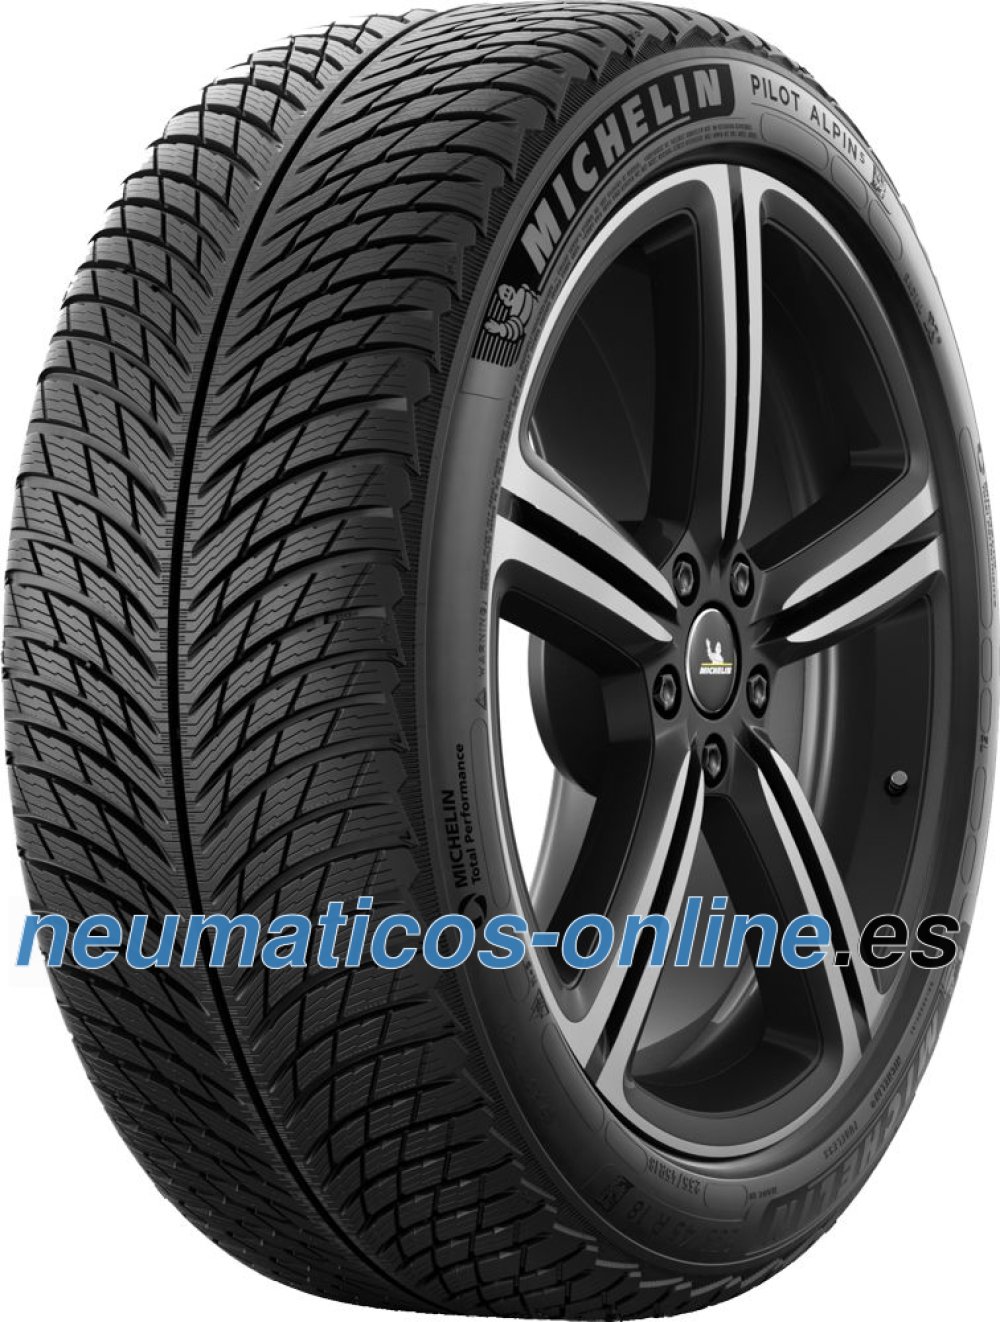 Michelin Alpin 5 245/45 R17 99V XL- neumaticos-online.es